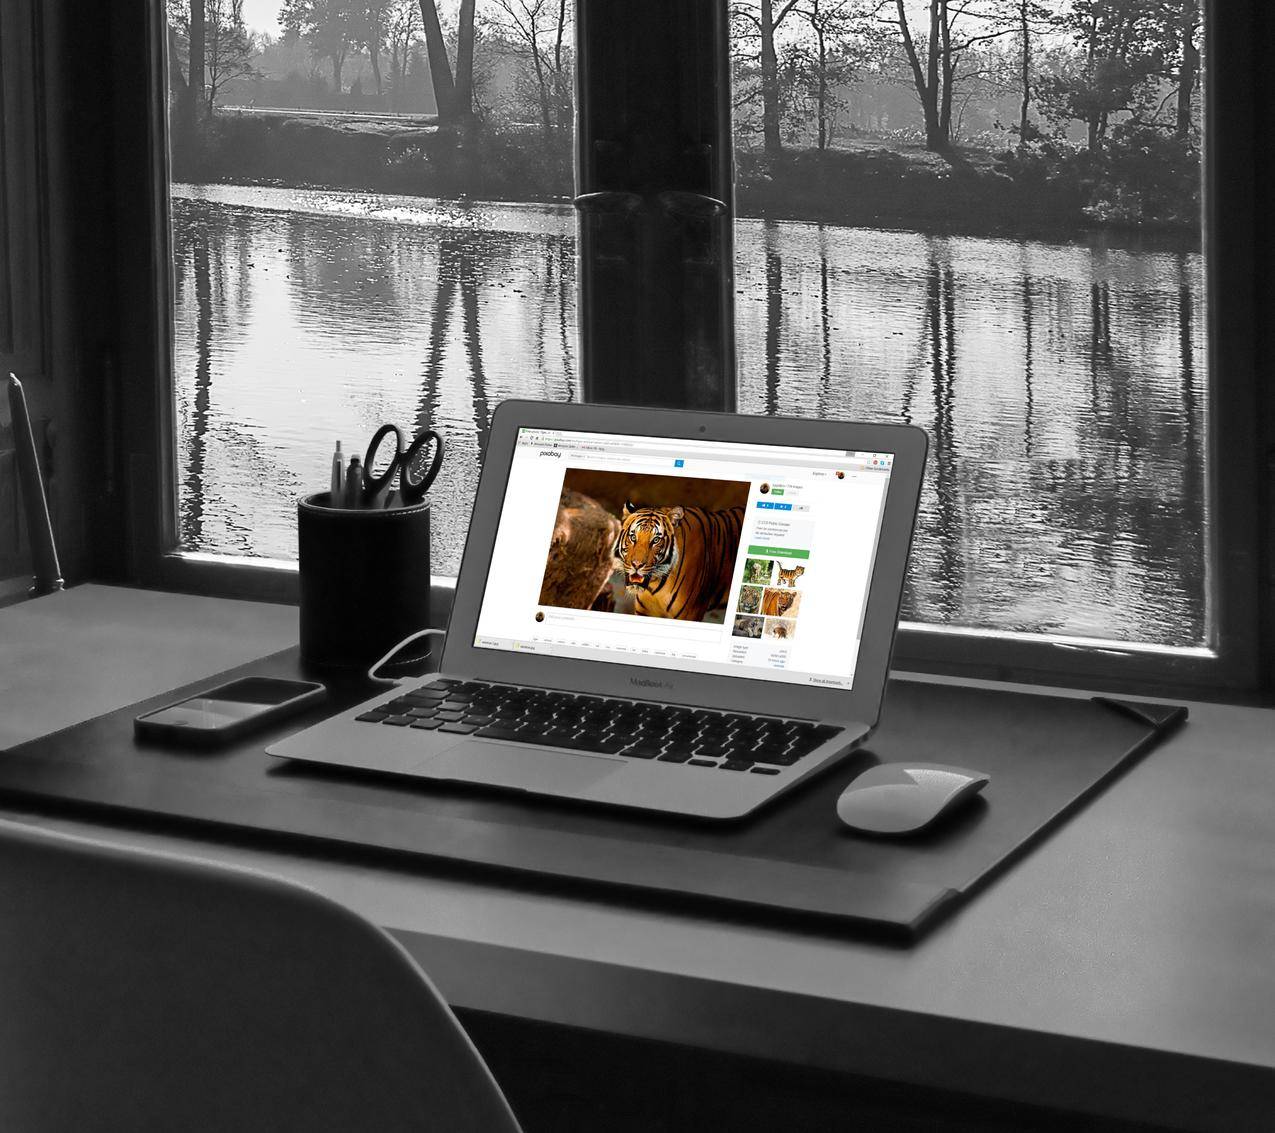 cc0可商用的黑白照片,桌子,笔记本电脑,互联网